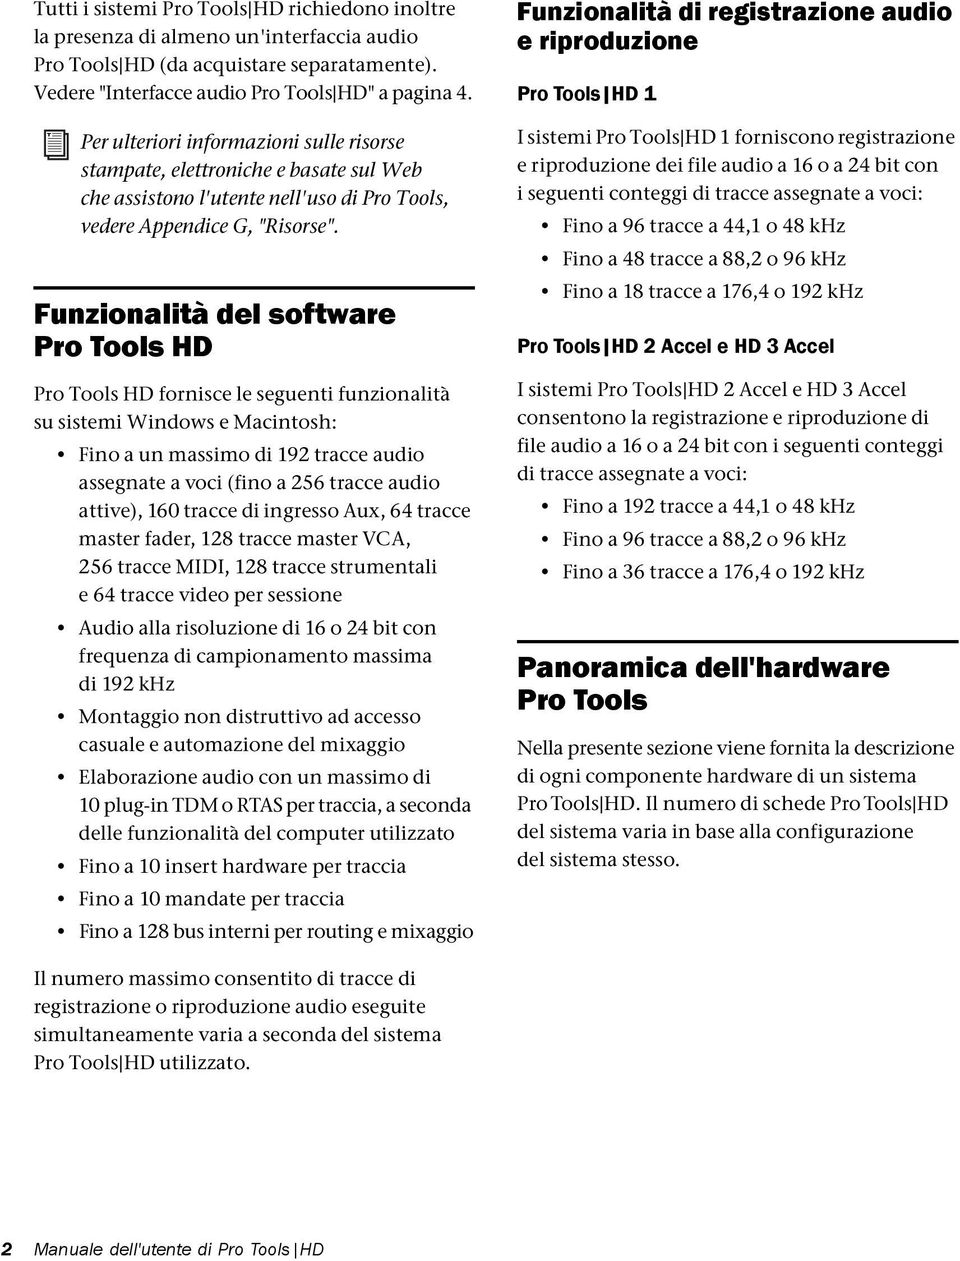 Funzionalità del software Pro Tools HD Pro Tools HD fornisce le seguenti funzionalità su sistemi Windows e Macintosh: Fino a un massimo di 192 tracce audio assegnate a voci (fino a 256 tracce audio